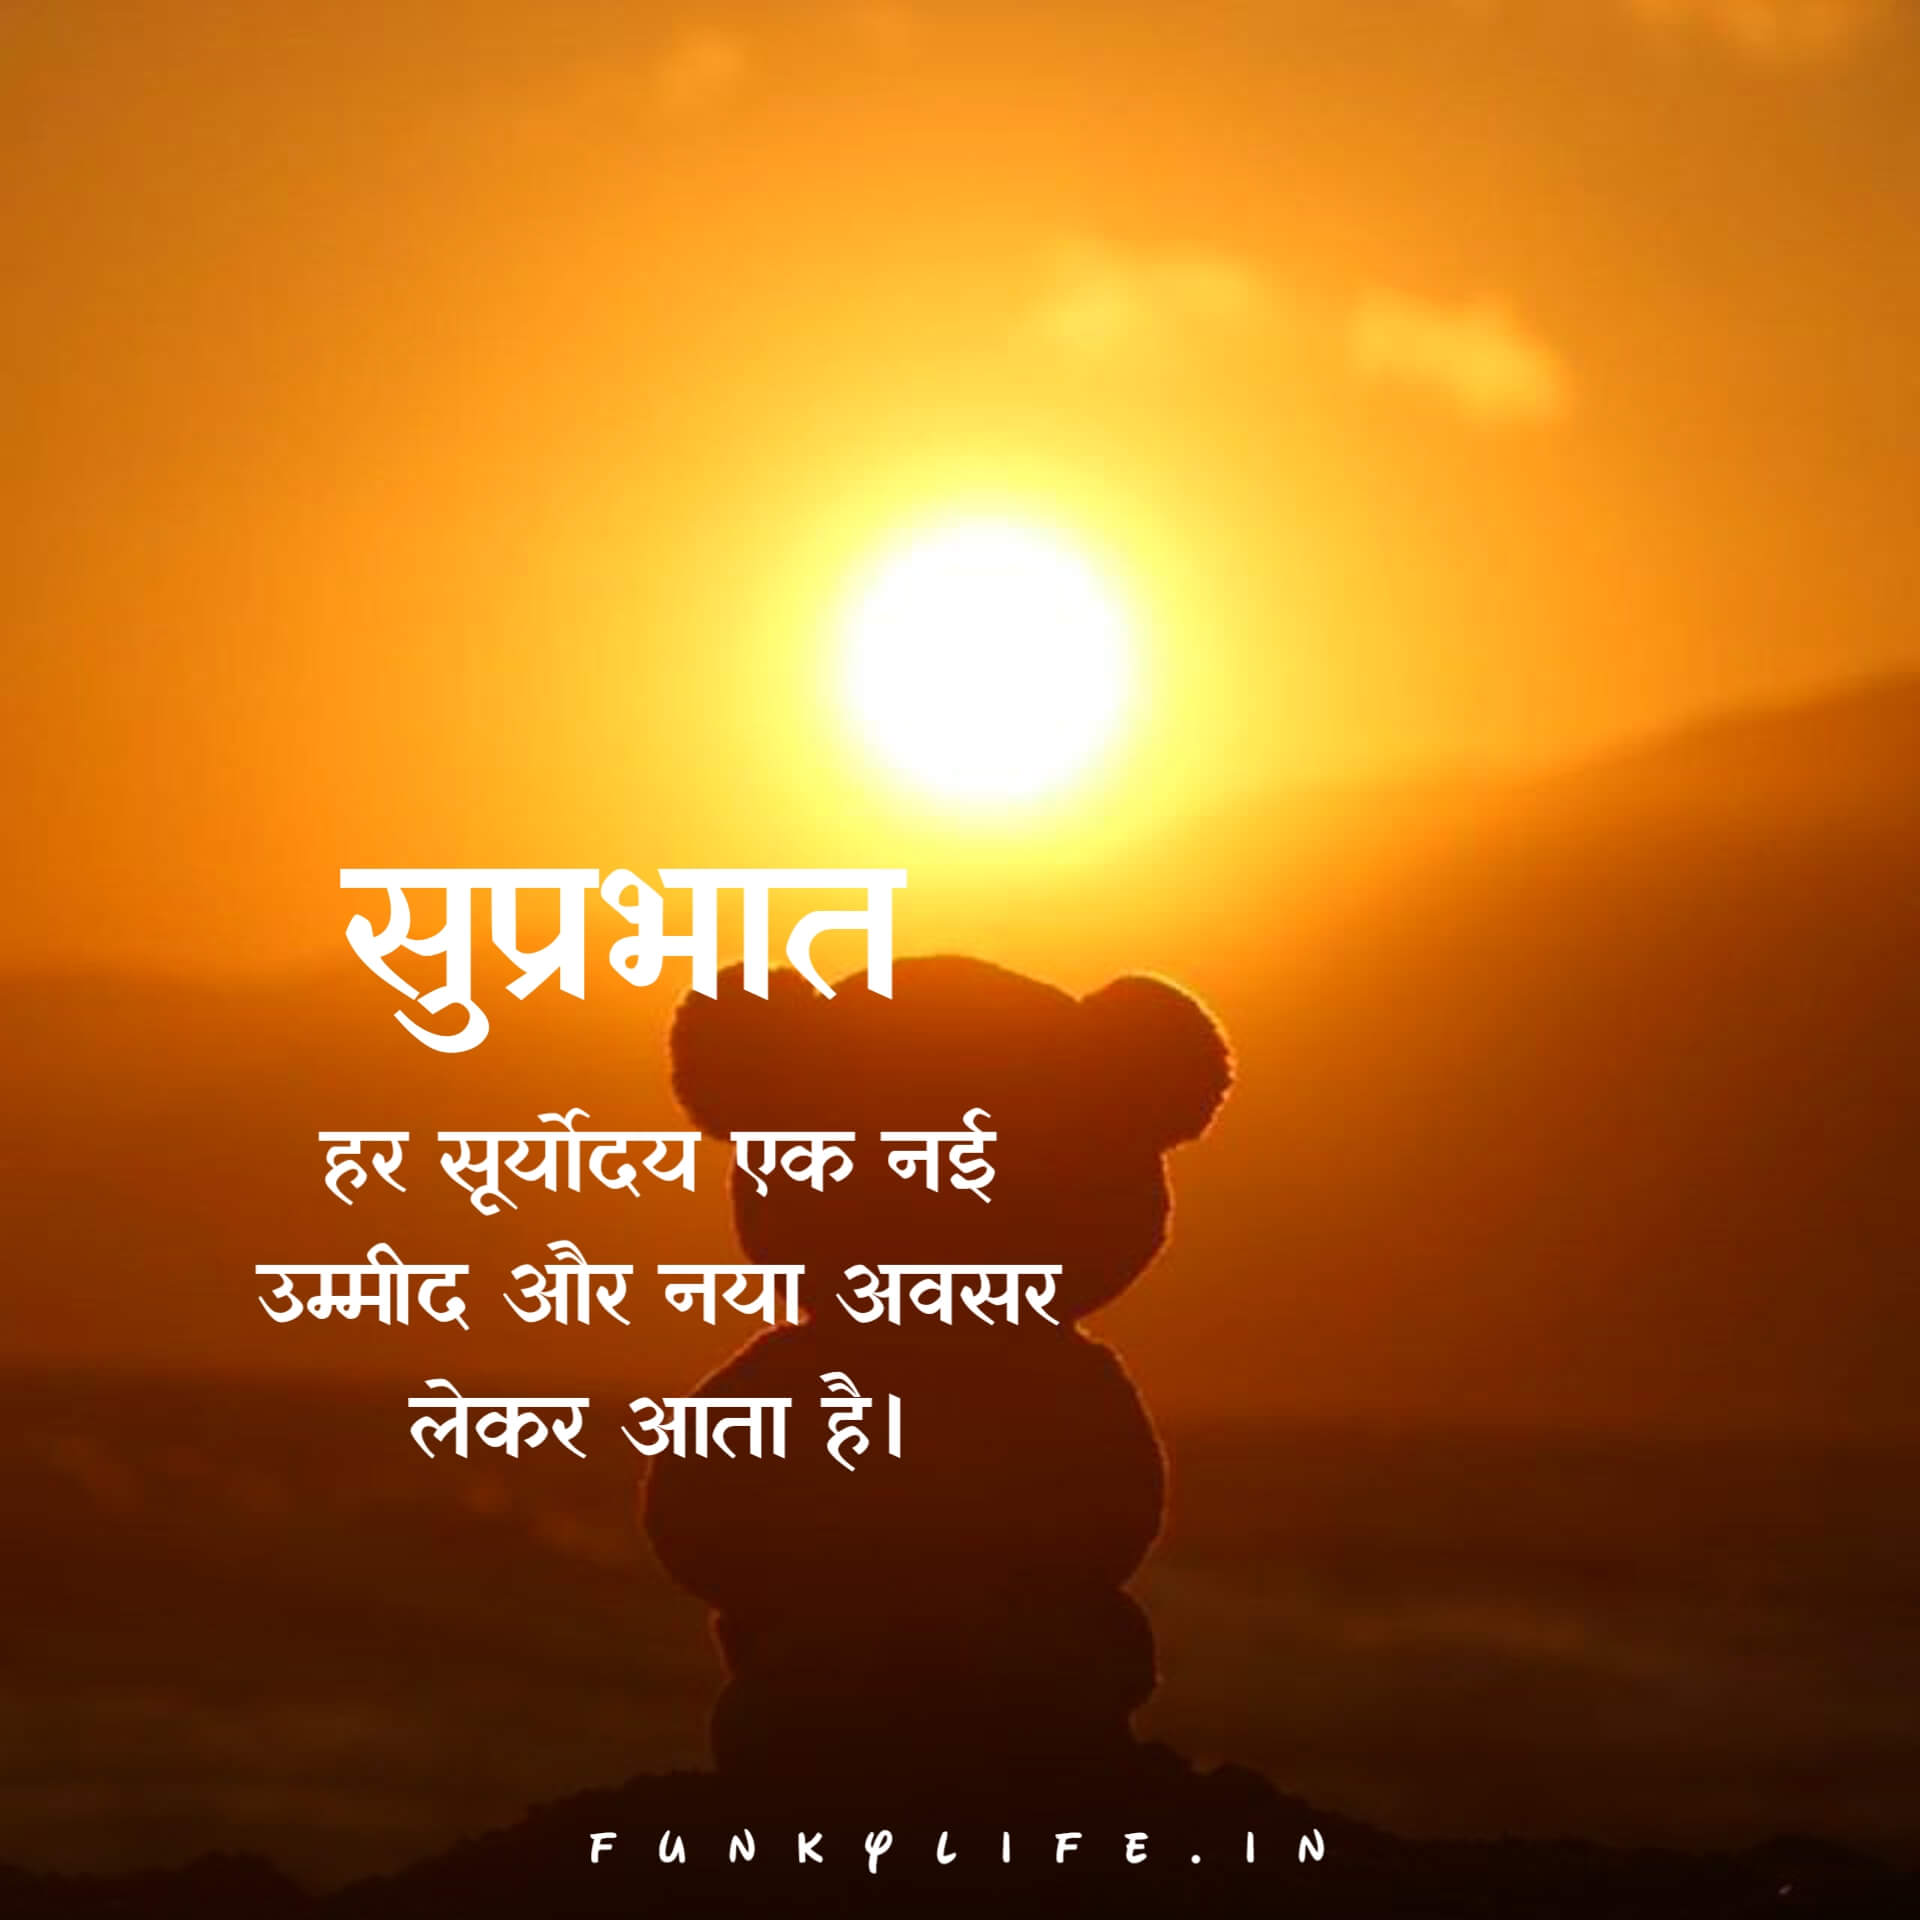 200+ Good Morning Quotes in Hindi - गुड मॉर्निंग कोट्स हिंदी में